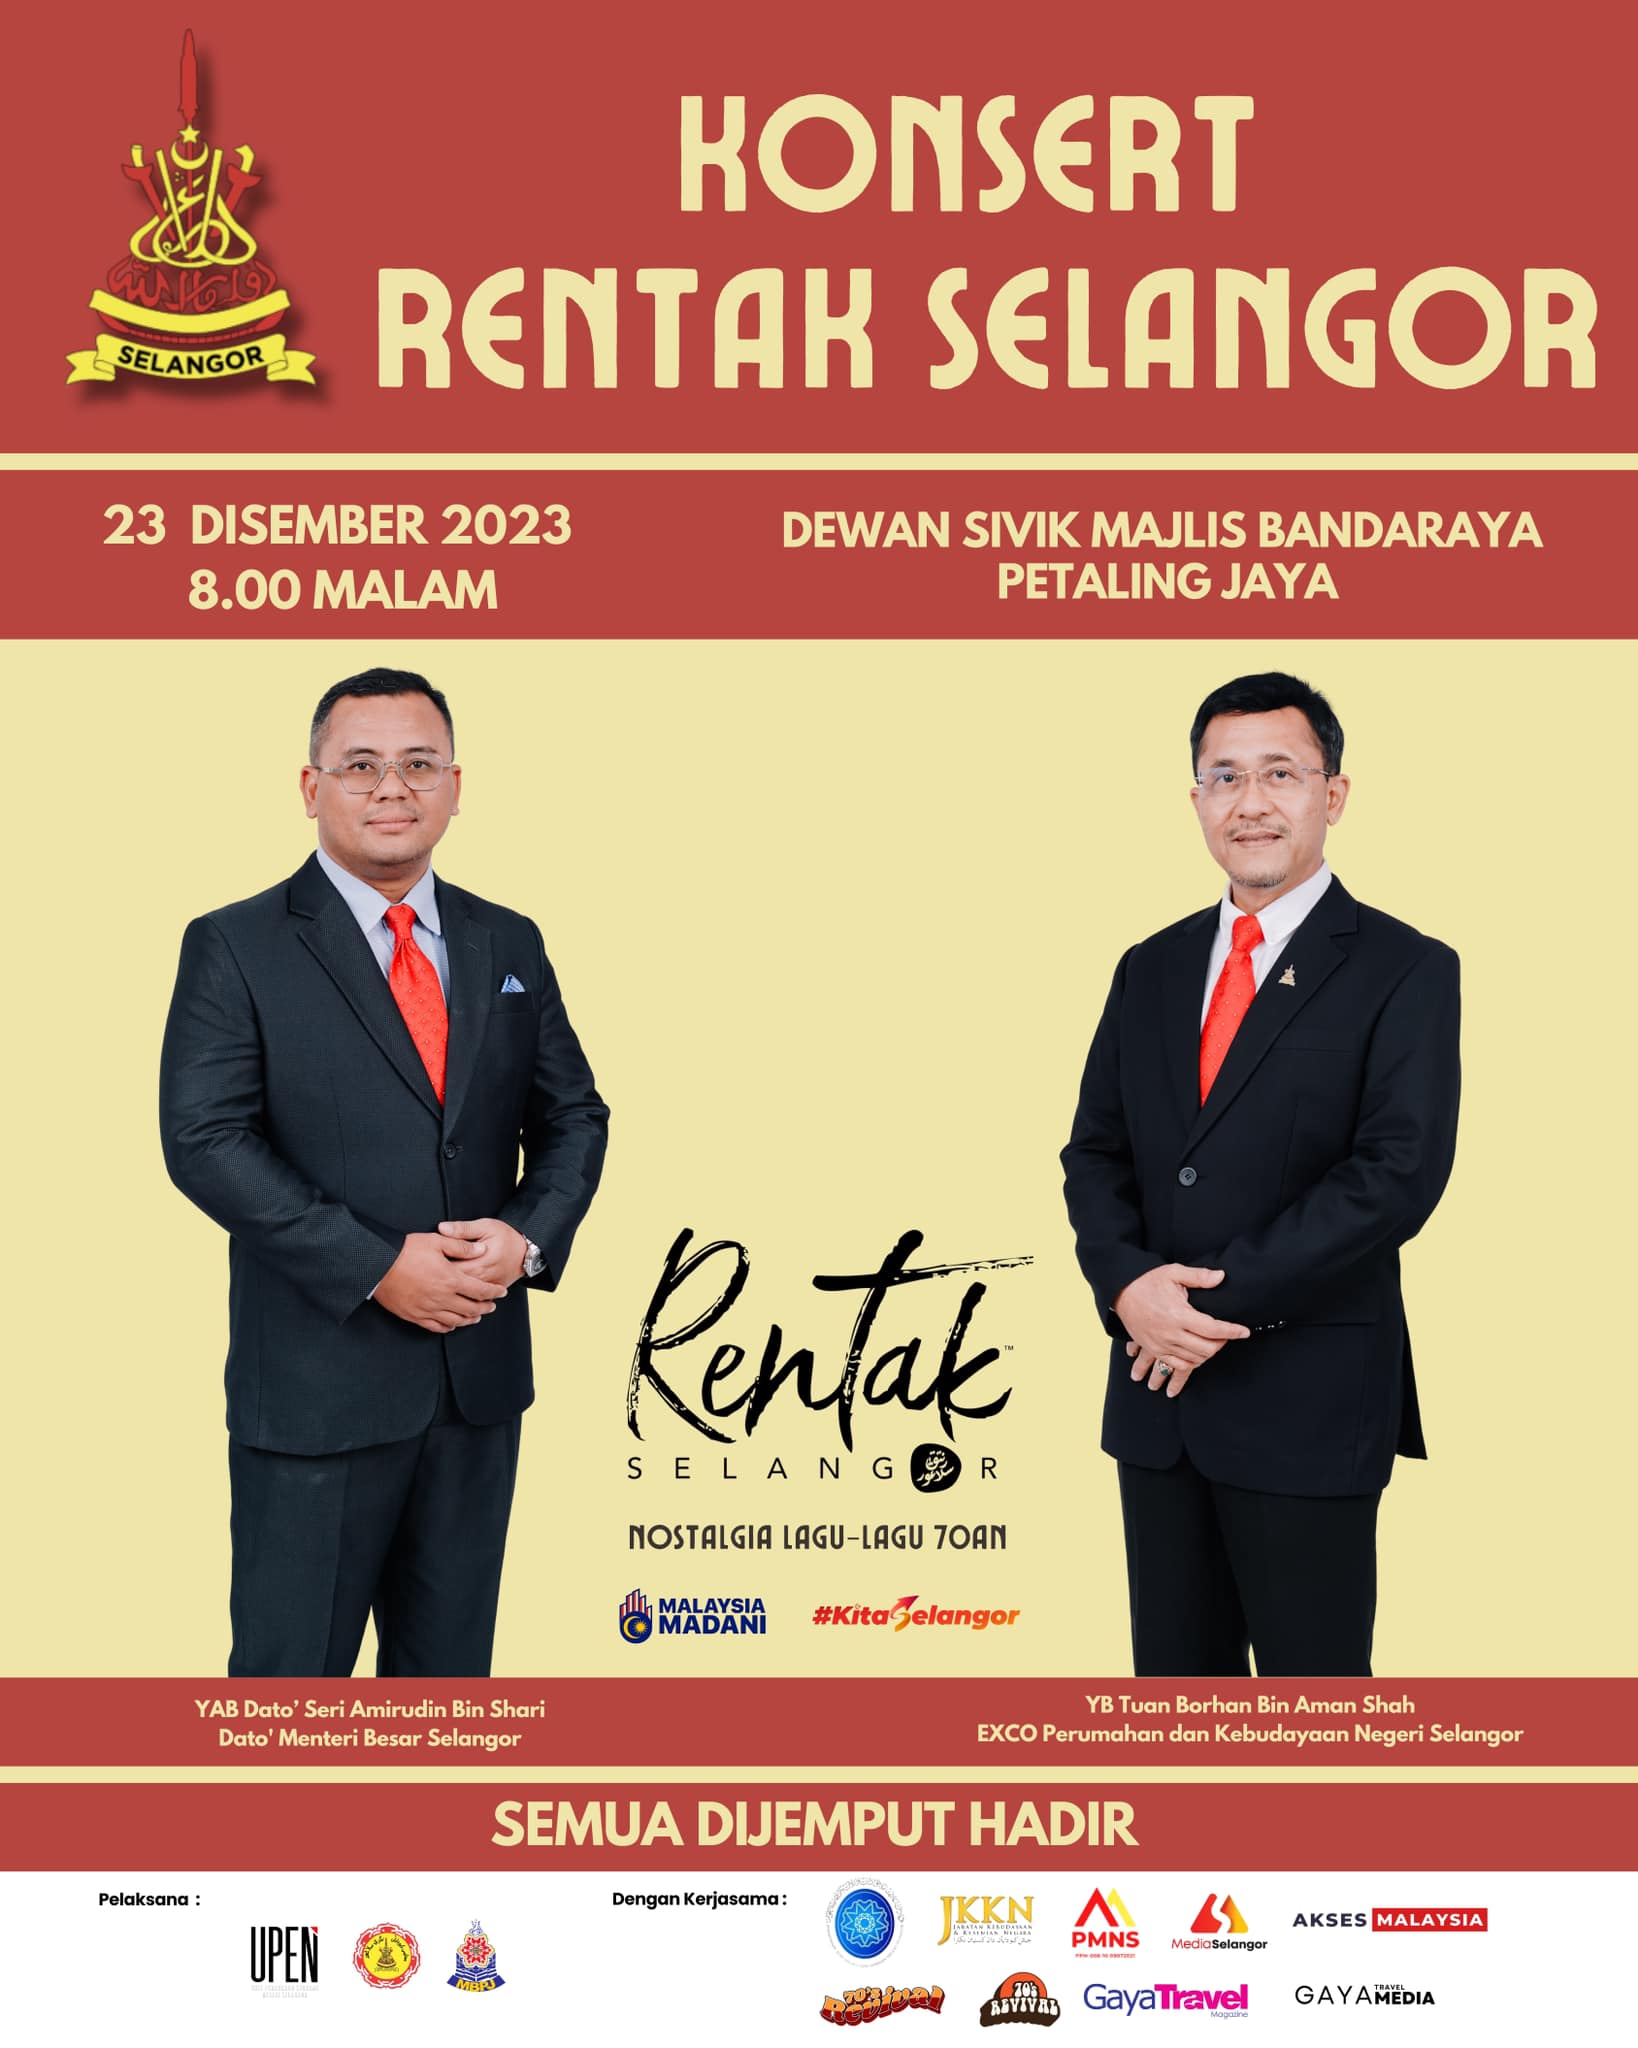 Rentak Selangor 2023